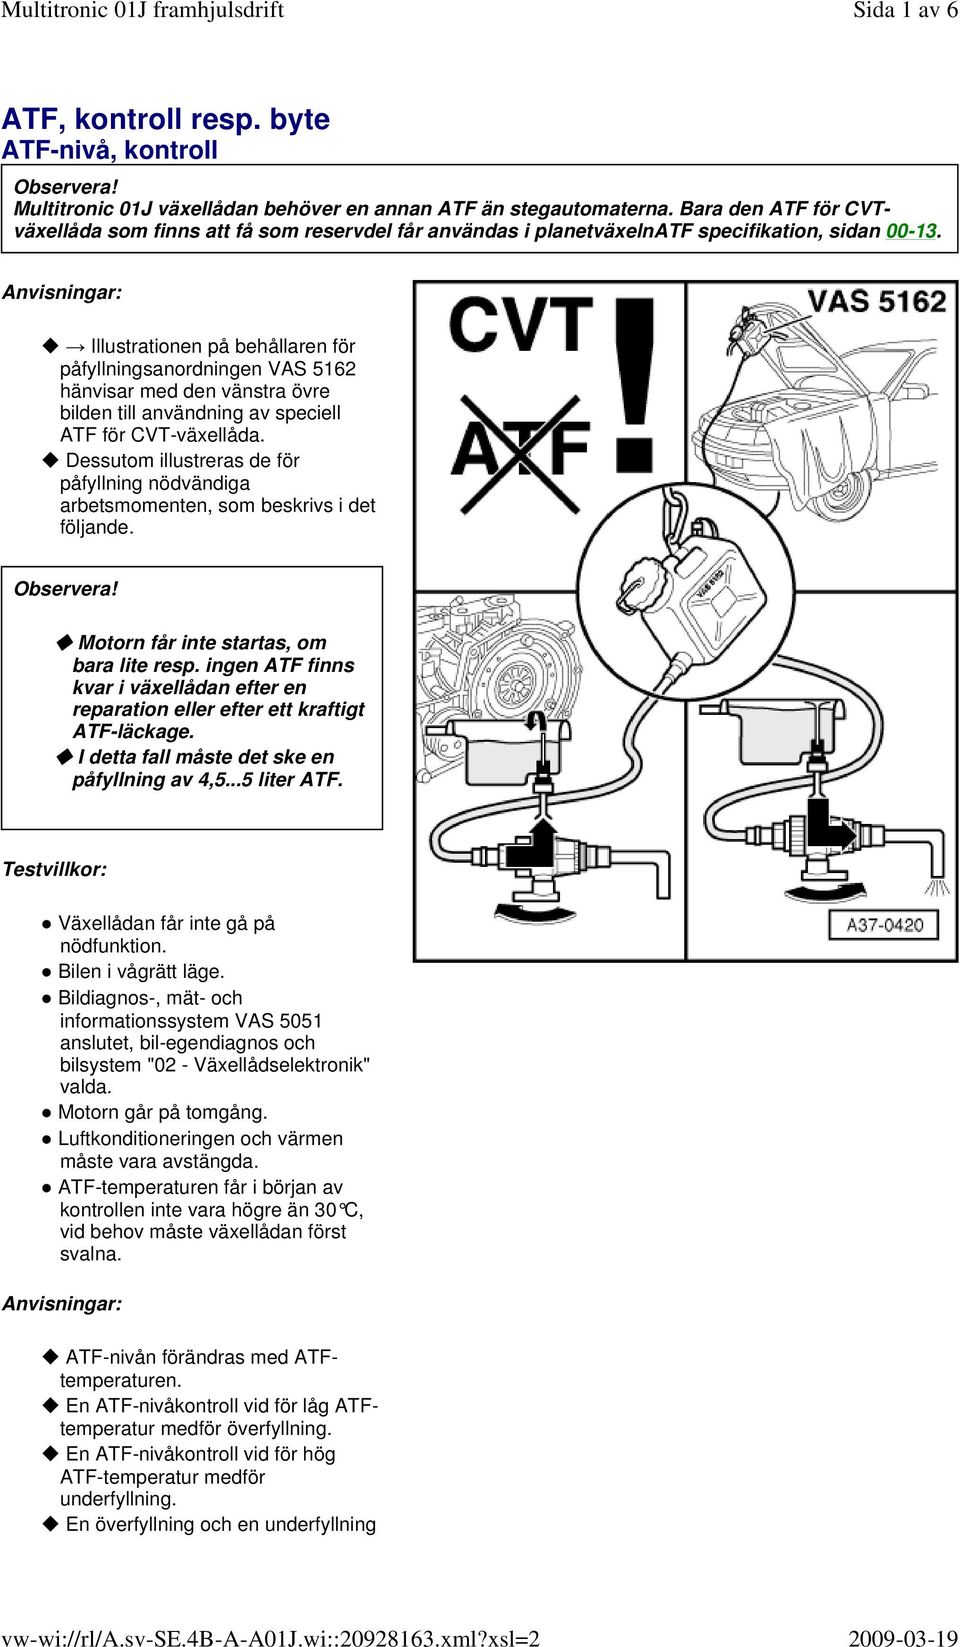 Anvisningar: Illustrationen på behållaren för påfyllningsanordningen VAS 5162 hänvisar med den vänstra övre bilden till användning av speciell ATF för CVT-växellåda.